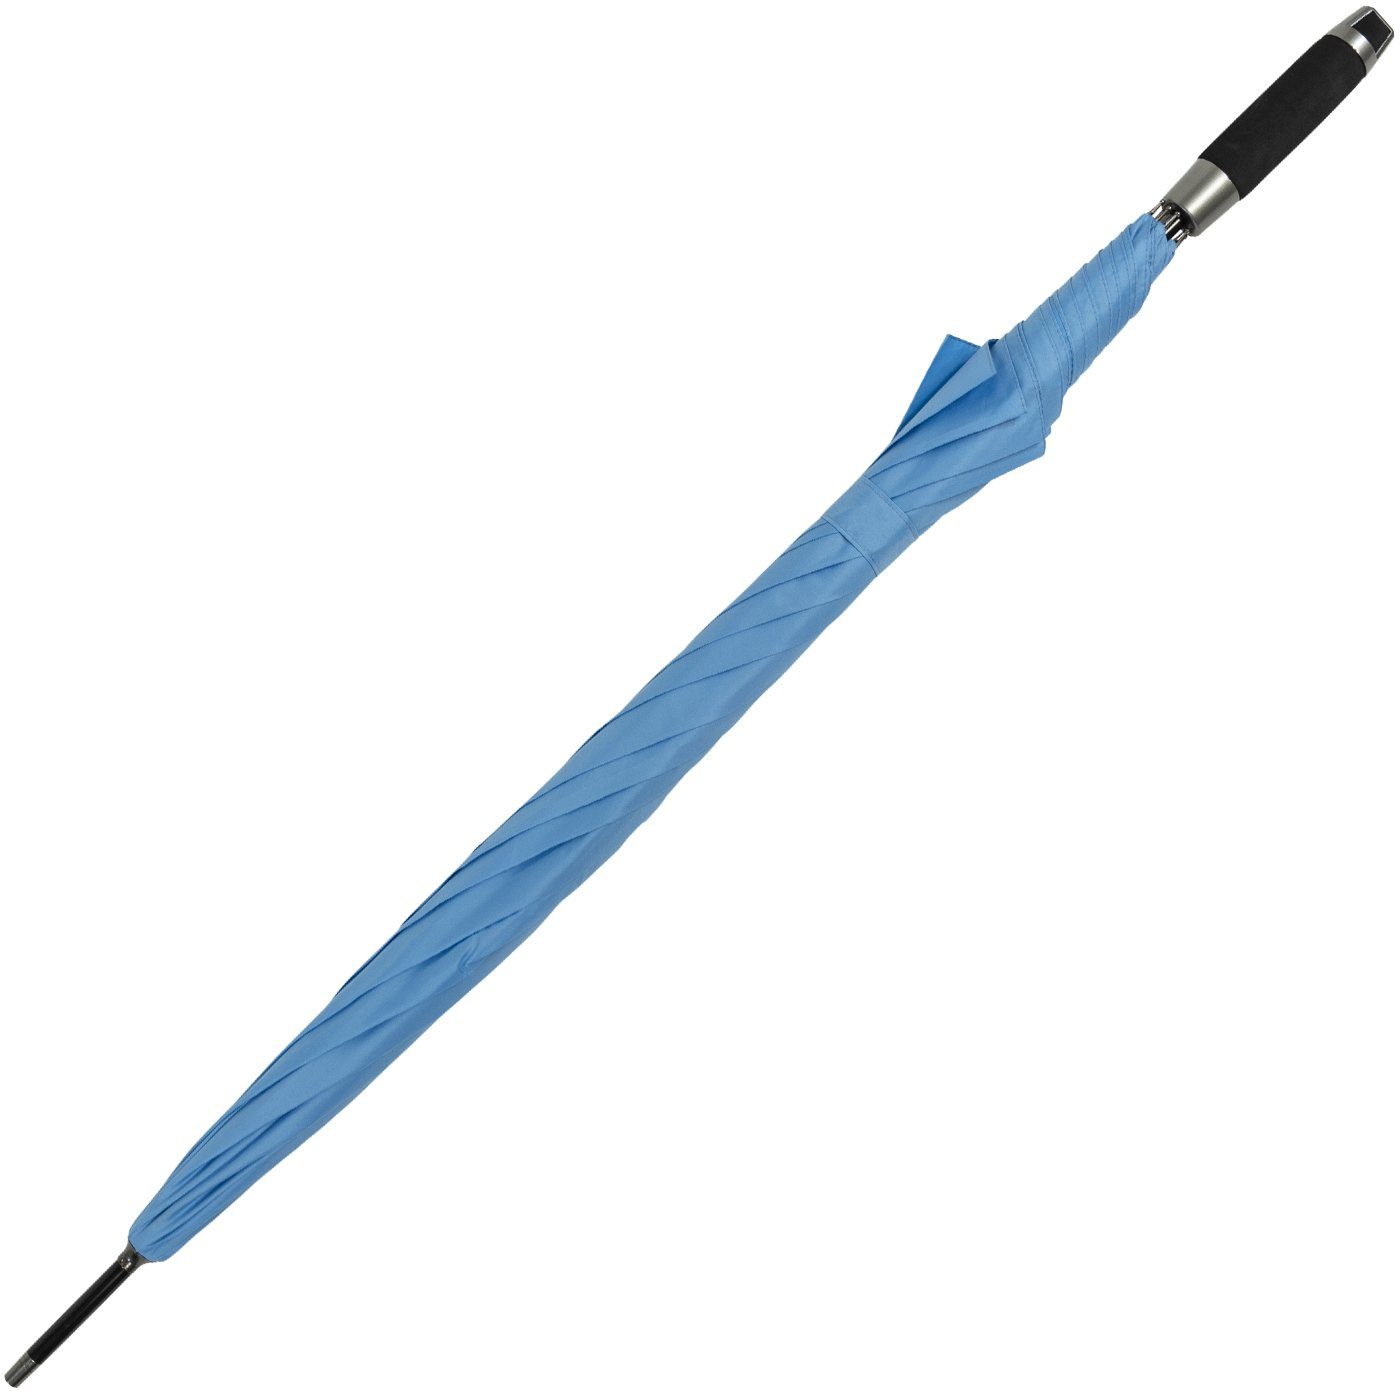 XXL für groß Golfschirm, - und und doppler® uni-Sommerfarben Langregenschirm Herren, stabil, Damen blau Partnerschirm